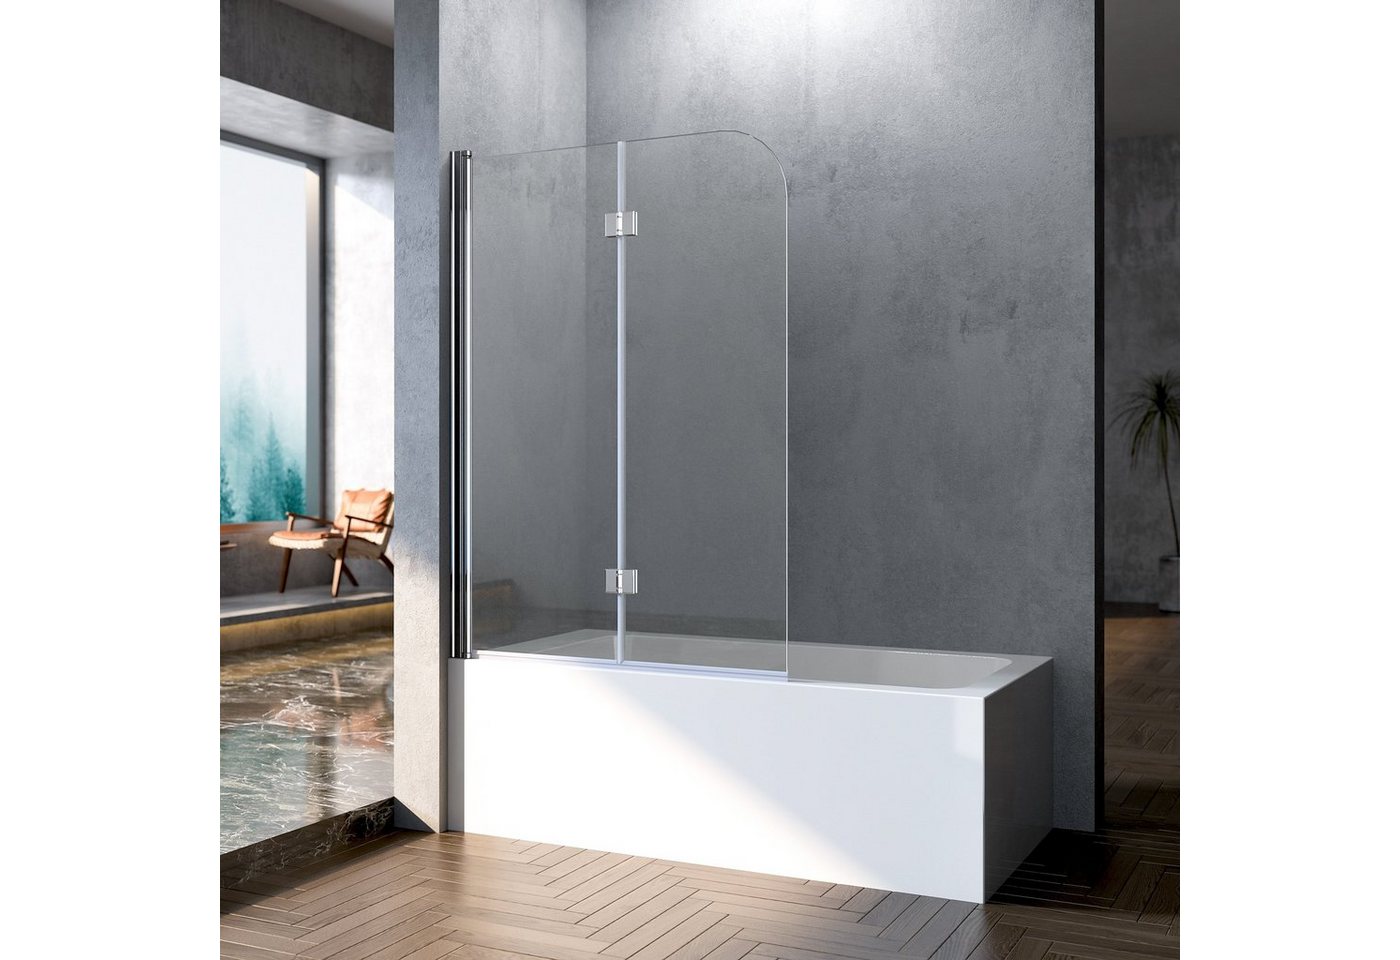 Boromal Badewannenaufsatz Duschwand für badewanne faltbar 2 teilig nano glas beidseitig, Sicherheitsglas, (180° Faltwand, 100x140, 110x140, 120x140), komplett faltbar, nach innen und nach außen öffnen von Boromal